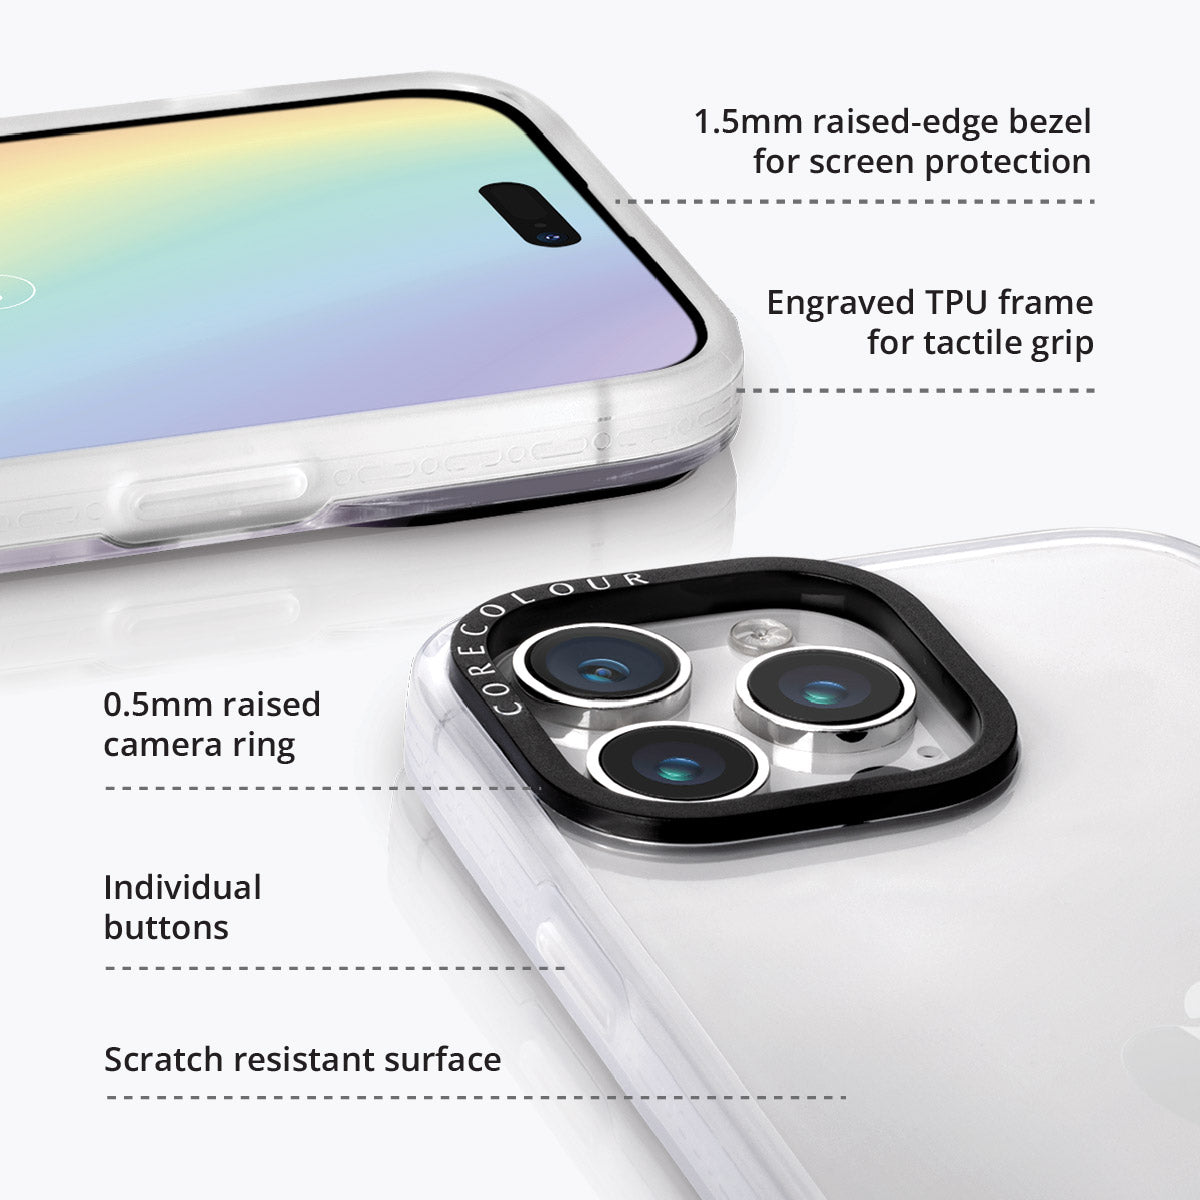 iPhone 13 Golden Retriever Minimal Line Phone Case Magsafe Compatible - CORECOLOUR AU